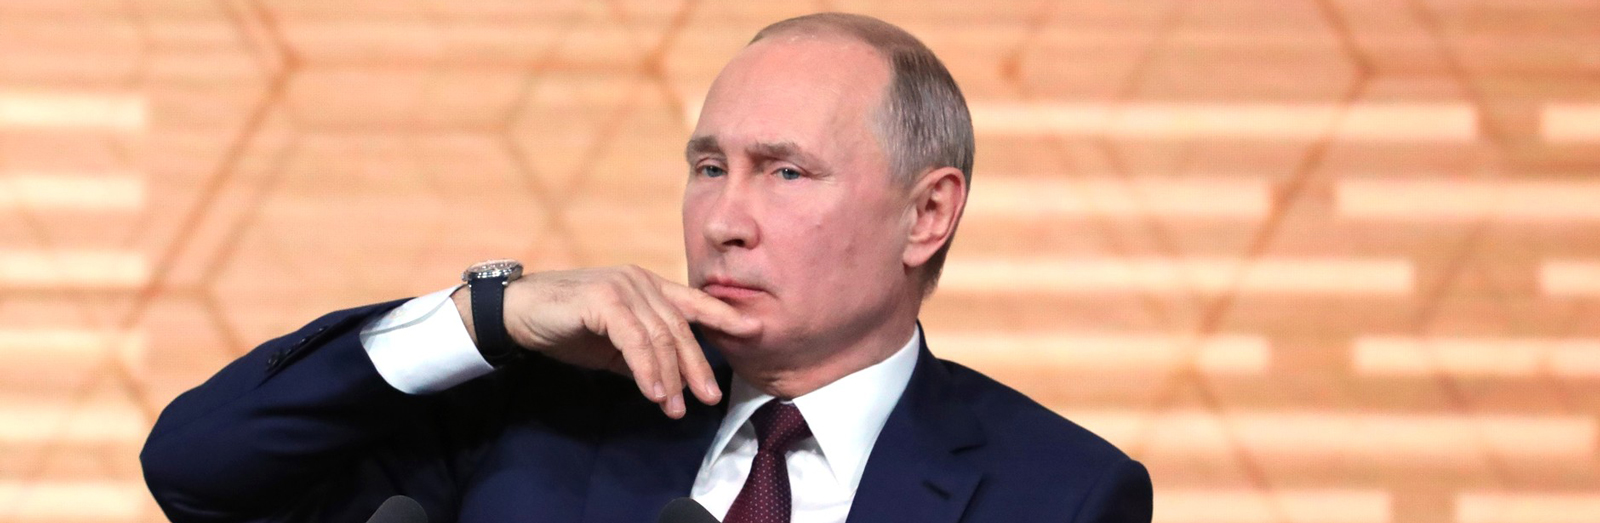 Вечный царь России. Почему Путин разогнал правительство и переписывает Конституцию